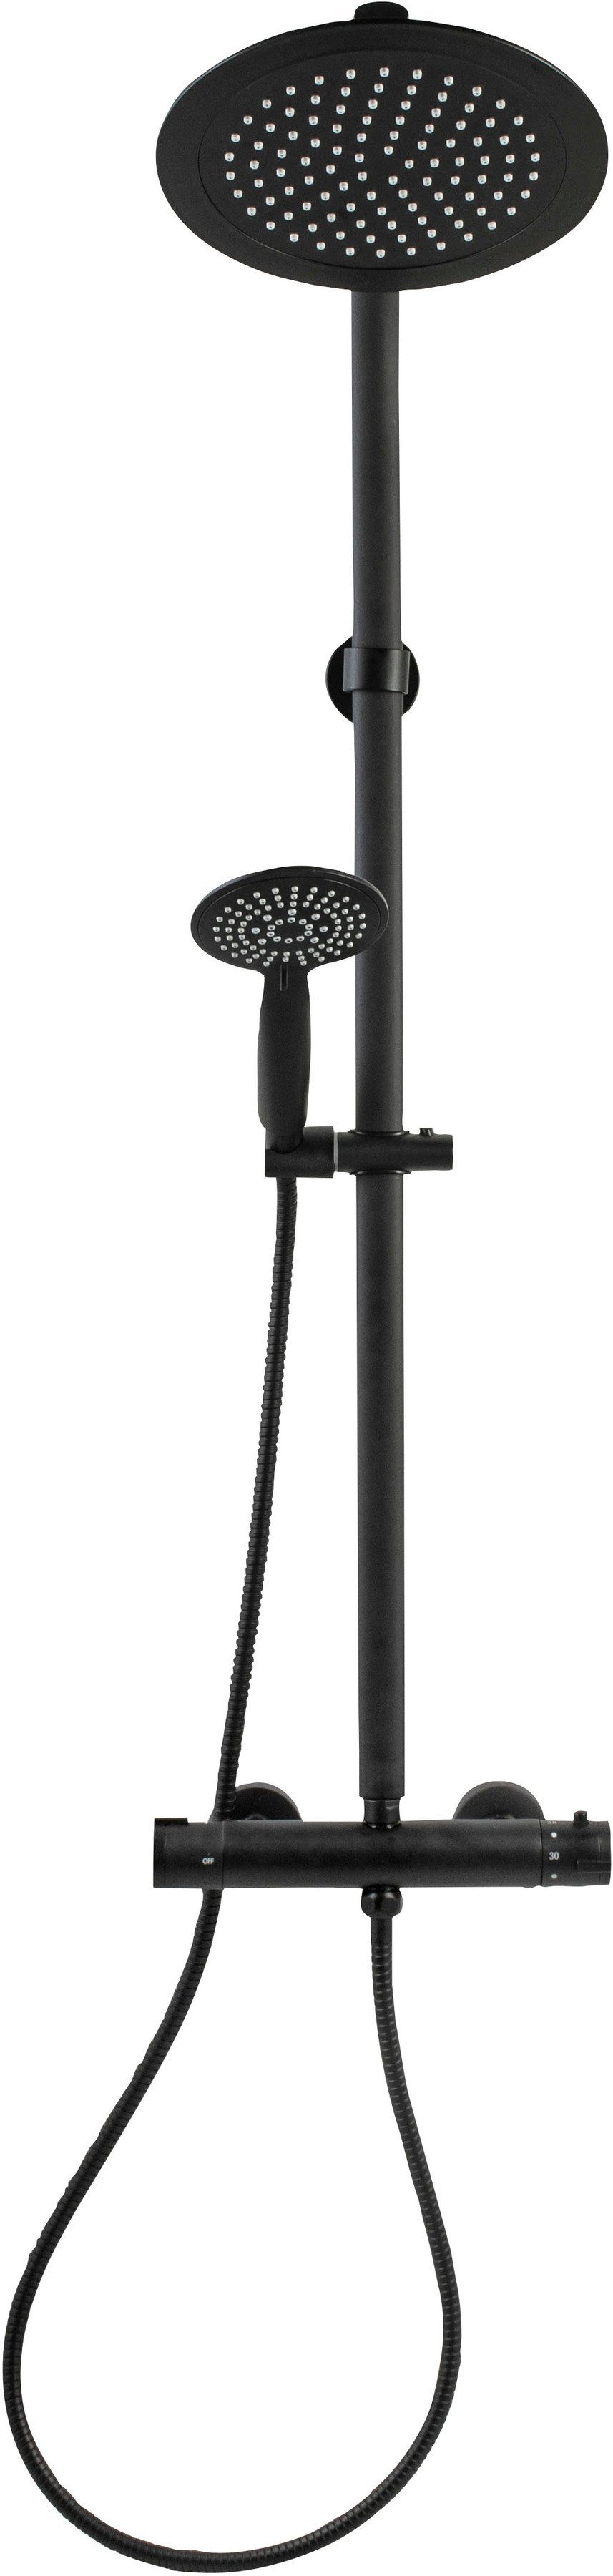 CORNAT Badarmatur Dusch-Komplettsystem "Noir Style" Black Edition, mit Thermostatarmatur, Handbrause mit 5 Strahlarten